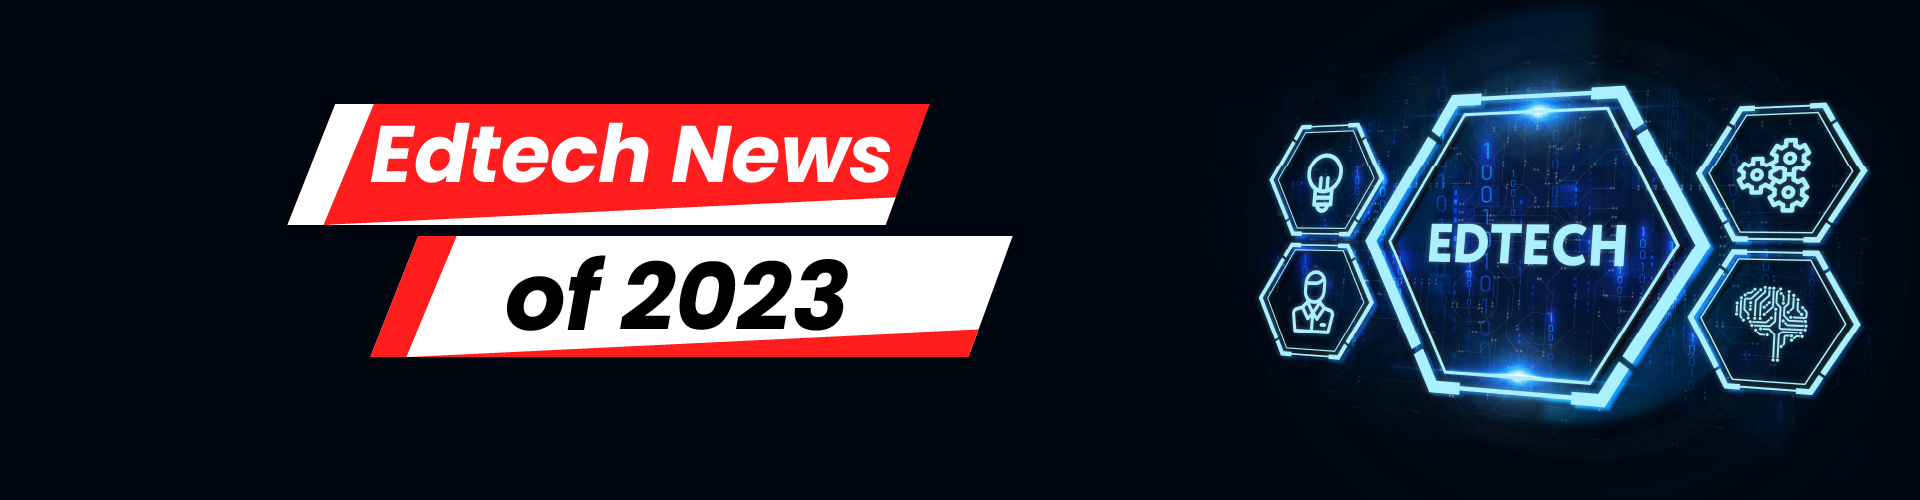 Top Edtech News of 2023